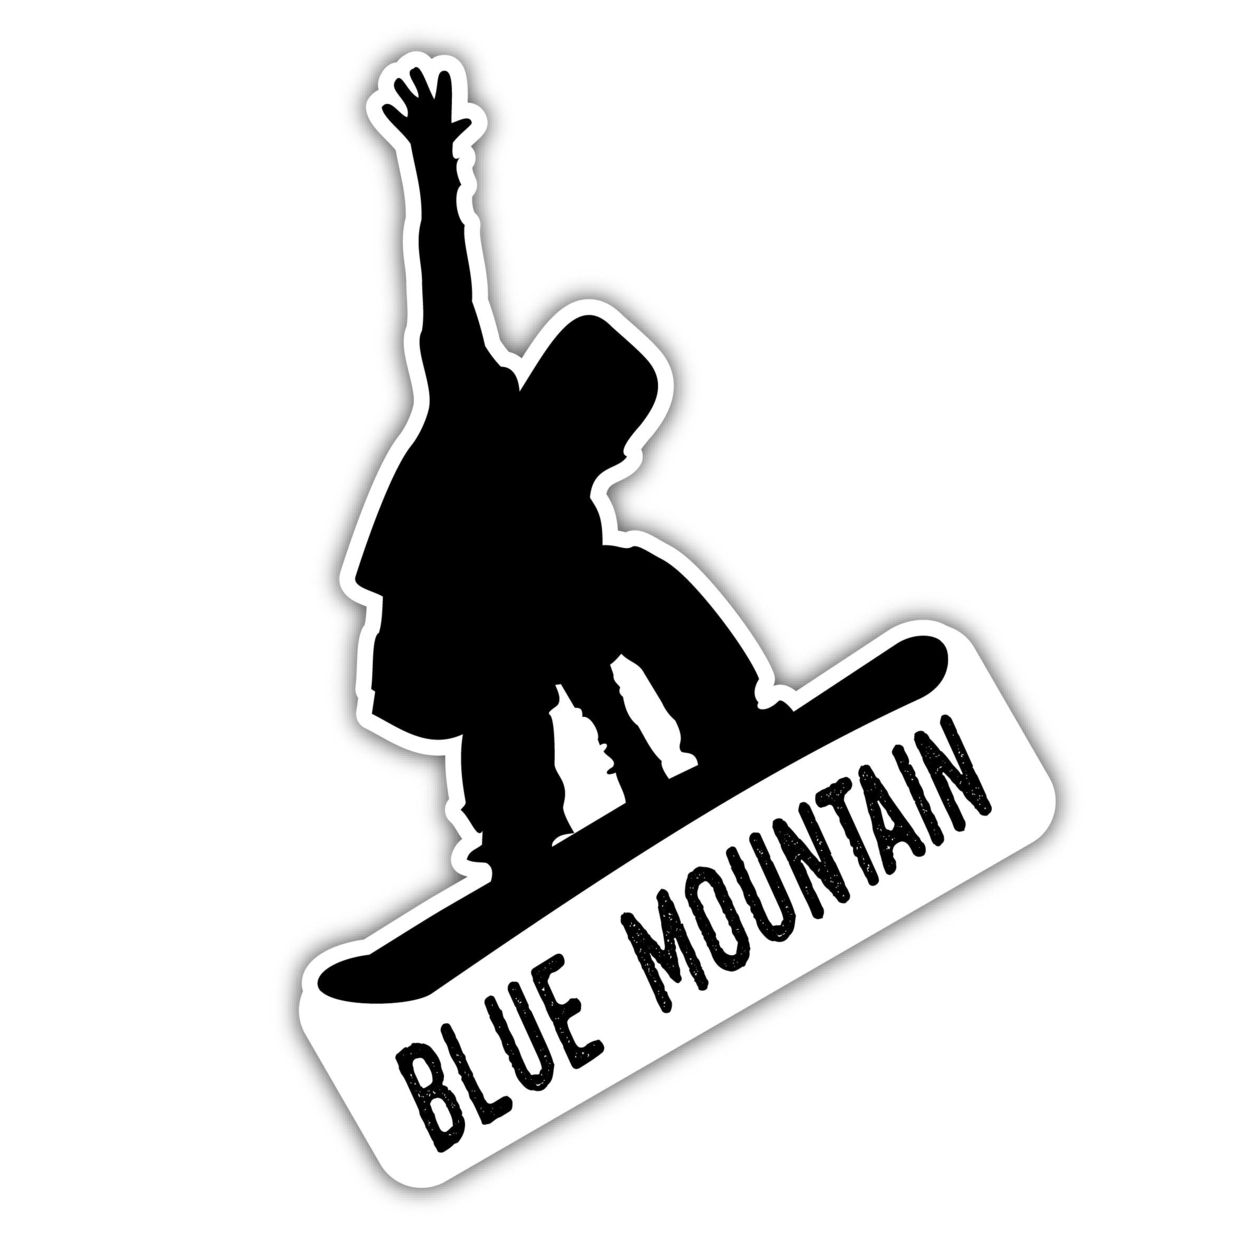 Blue Mountain Ontario Ski Adventures Souvenir 4 Inch Vinyl Decal Sticker Mountain Design